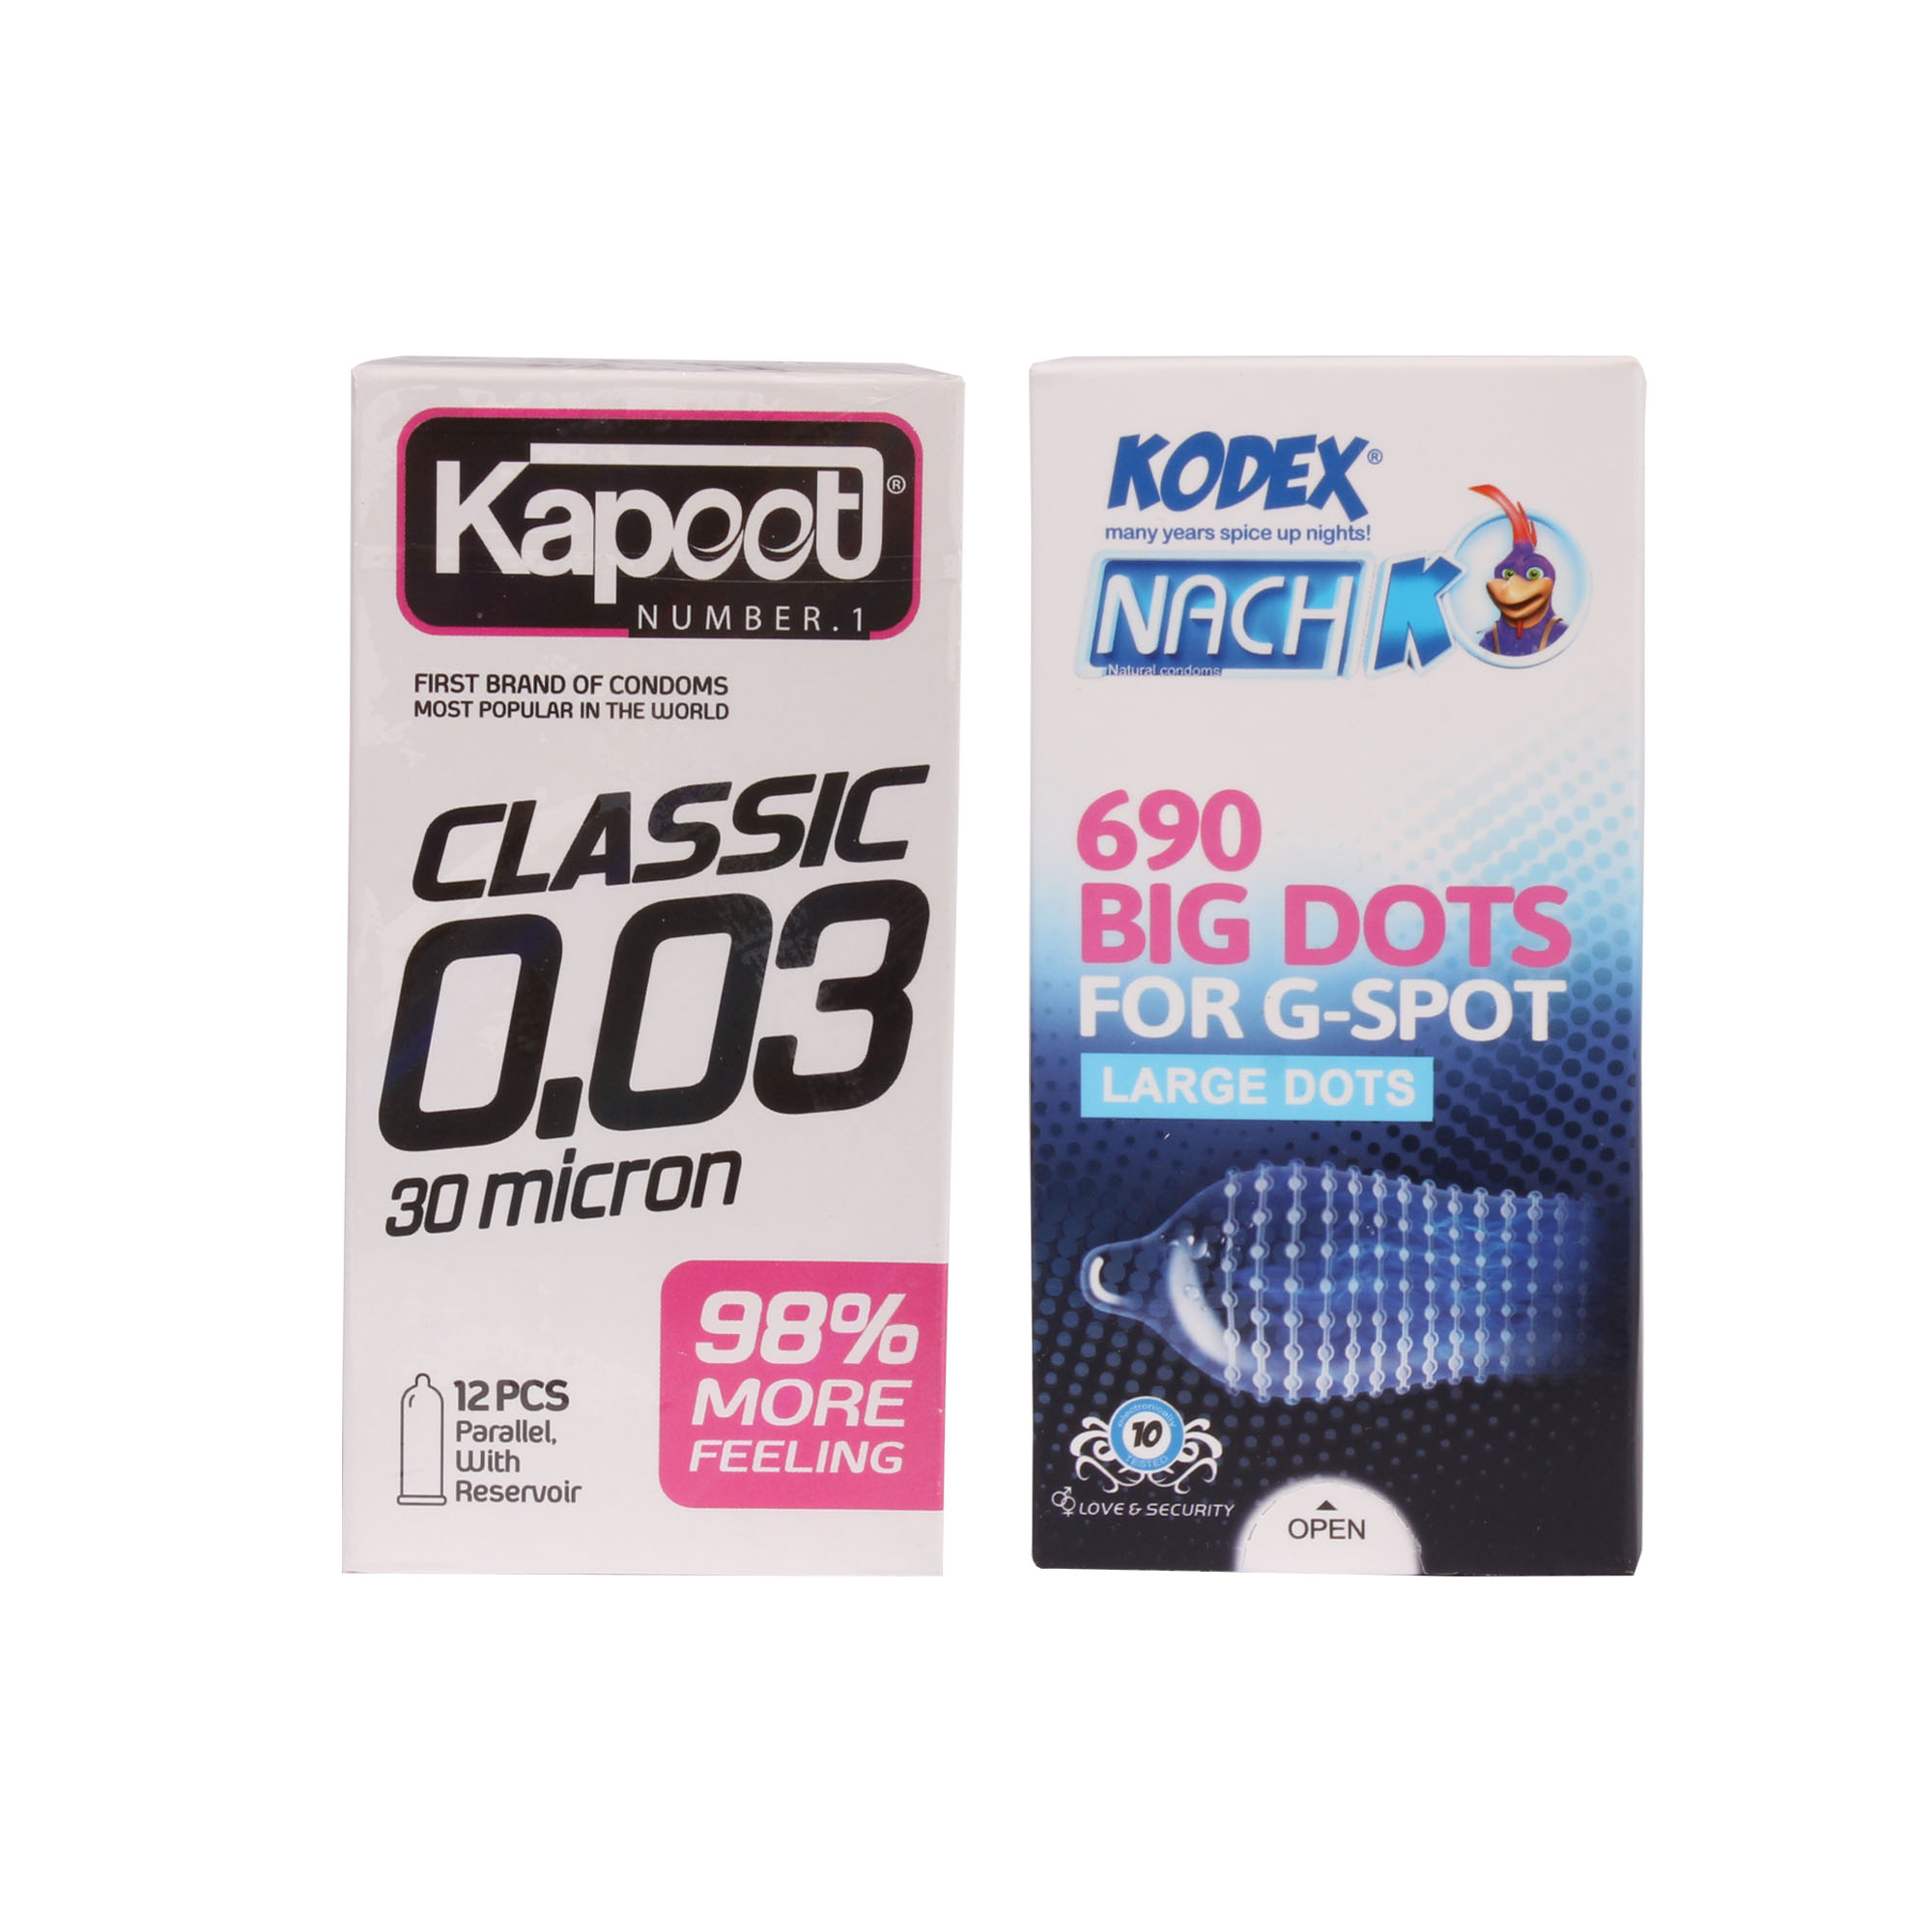 کاندوم کاپوت مدل Classic0.03 بسته 12 عددی به همراه کاندوم ناچ کدکس مدل 690 Big dots بسته 10 عددی